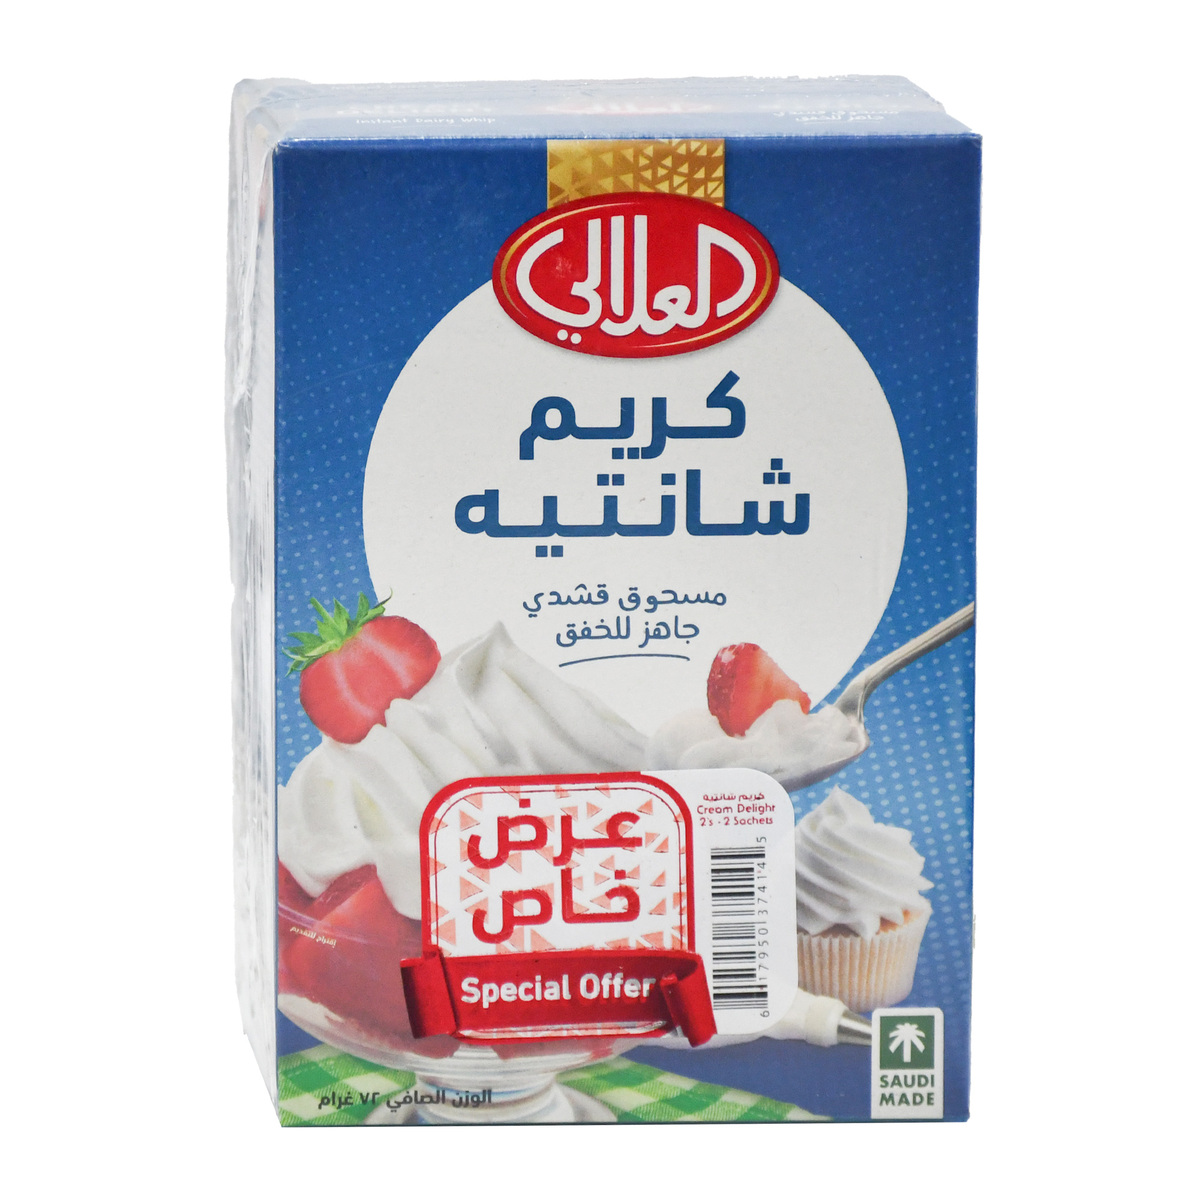 Al Alali Cream Delight Value Pack 2 x 72 g